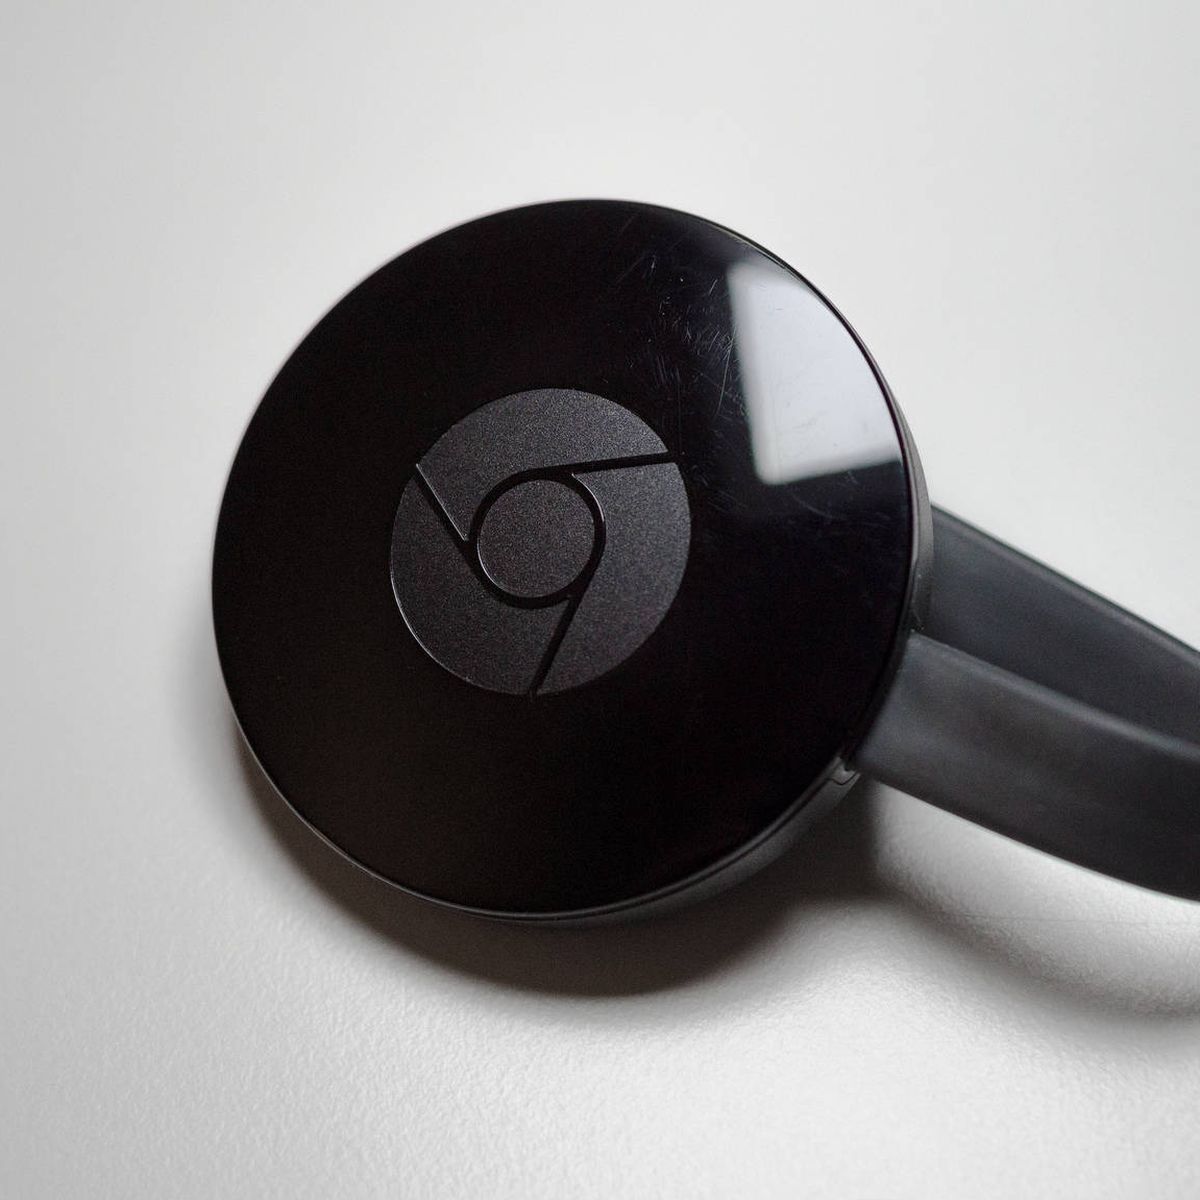 Google 'cocina' su nuevo Chromecast: así será y así debería ser